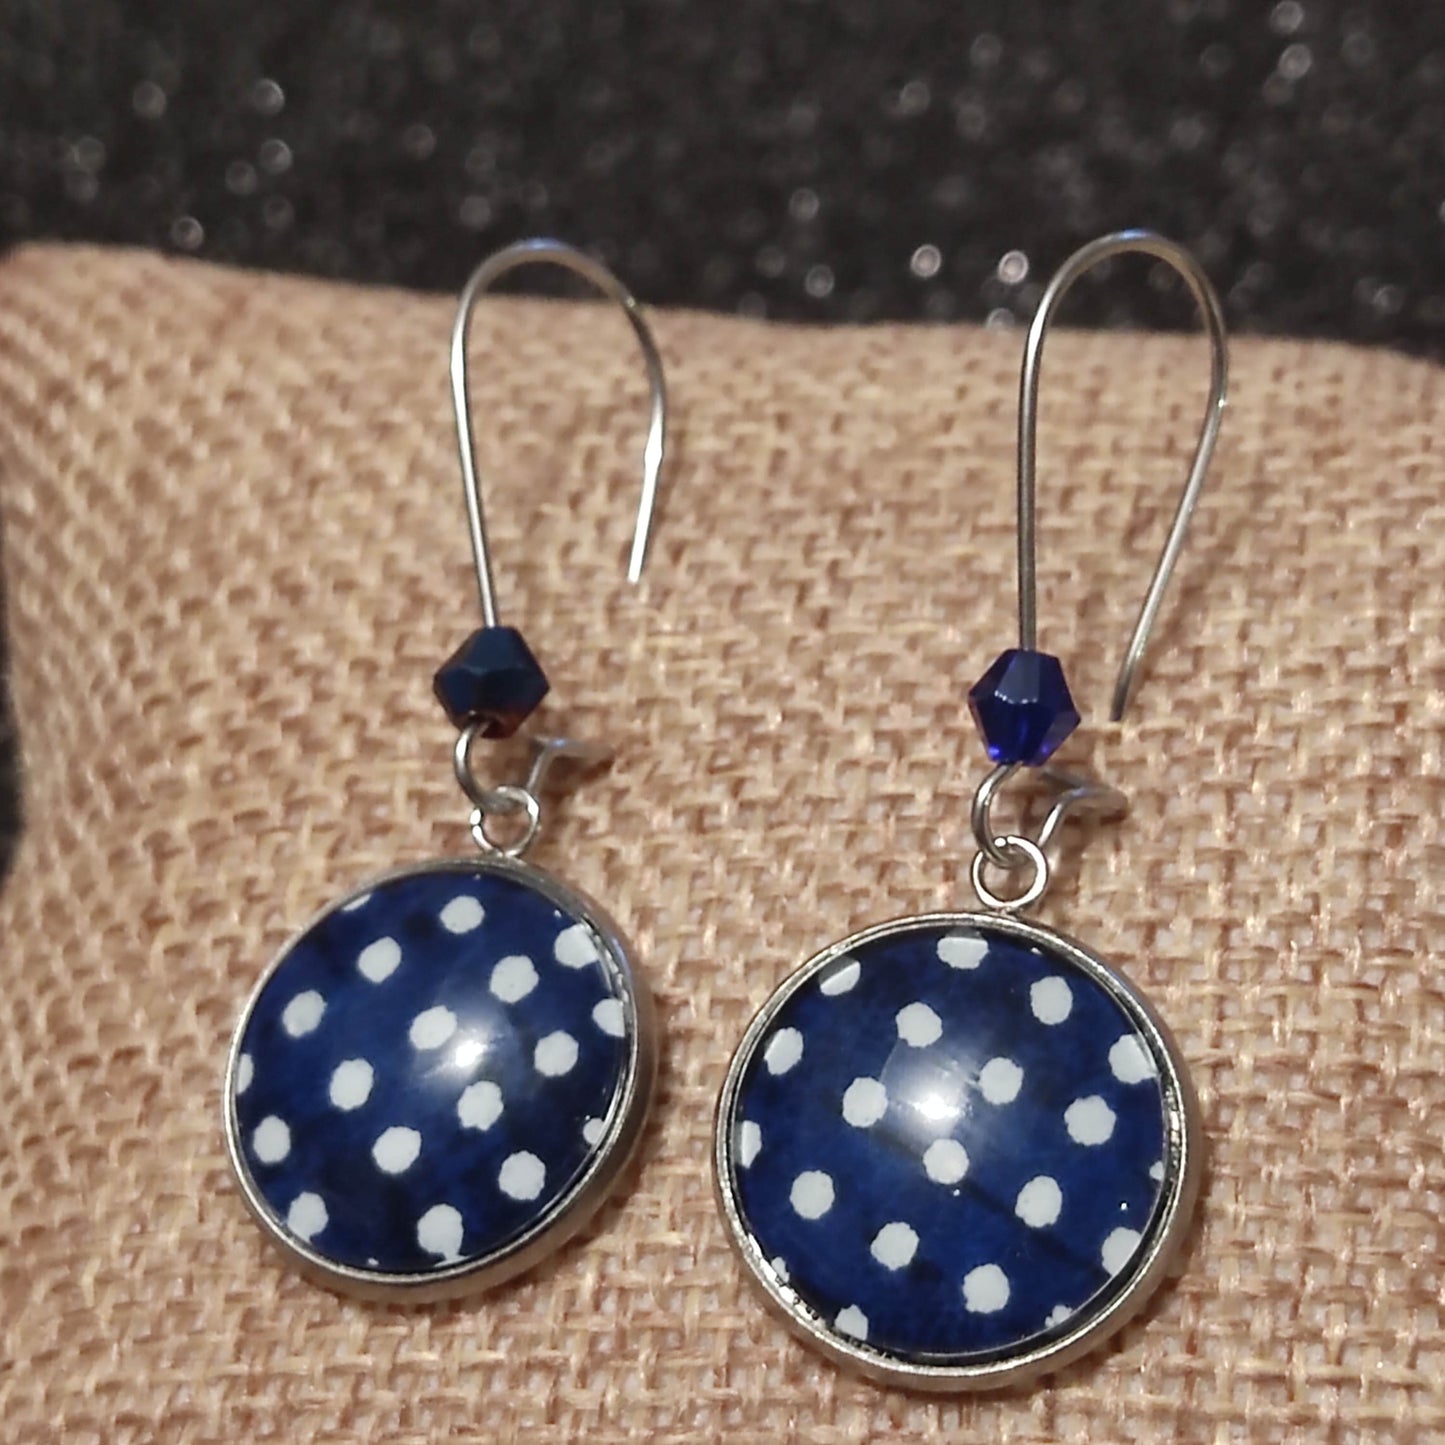 Boucles d'oreilles pendantes crochets fermés - Cabochon rond 16mm - acier inoxydable - Pois blancs, fond bleu marine - Perle bleu marine